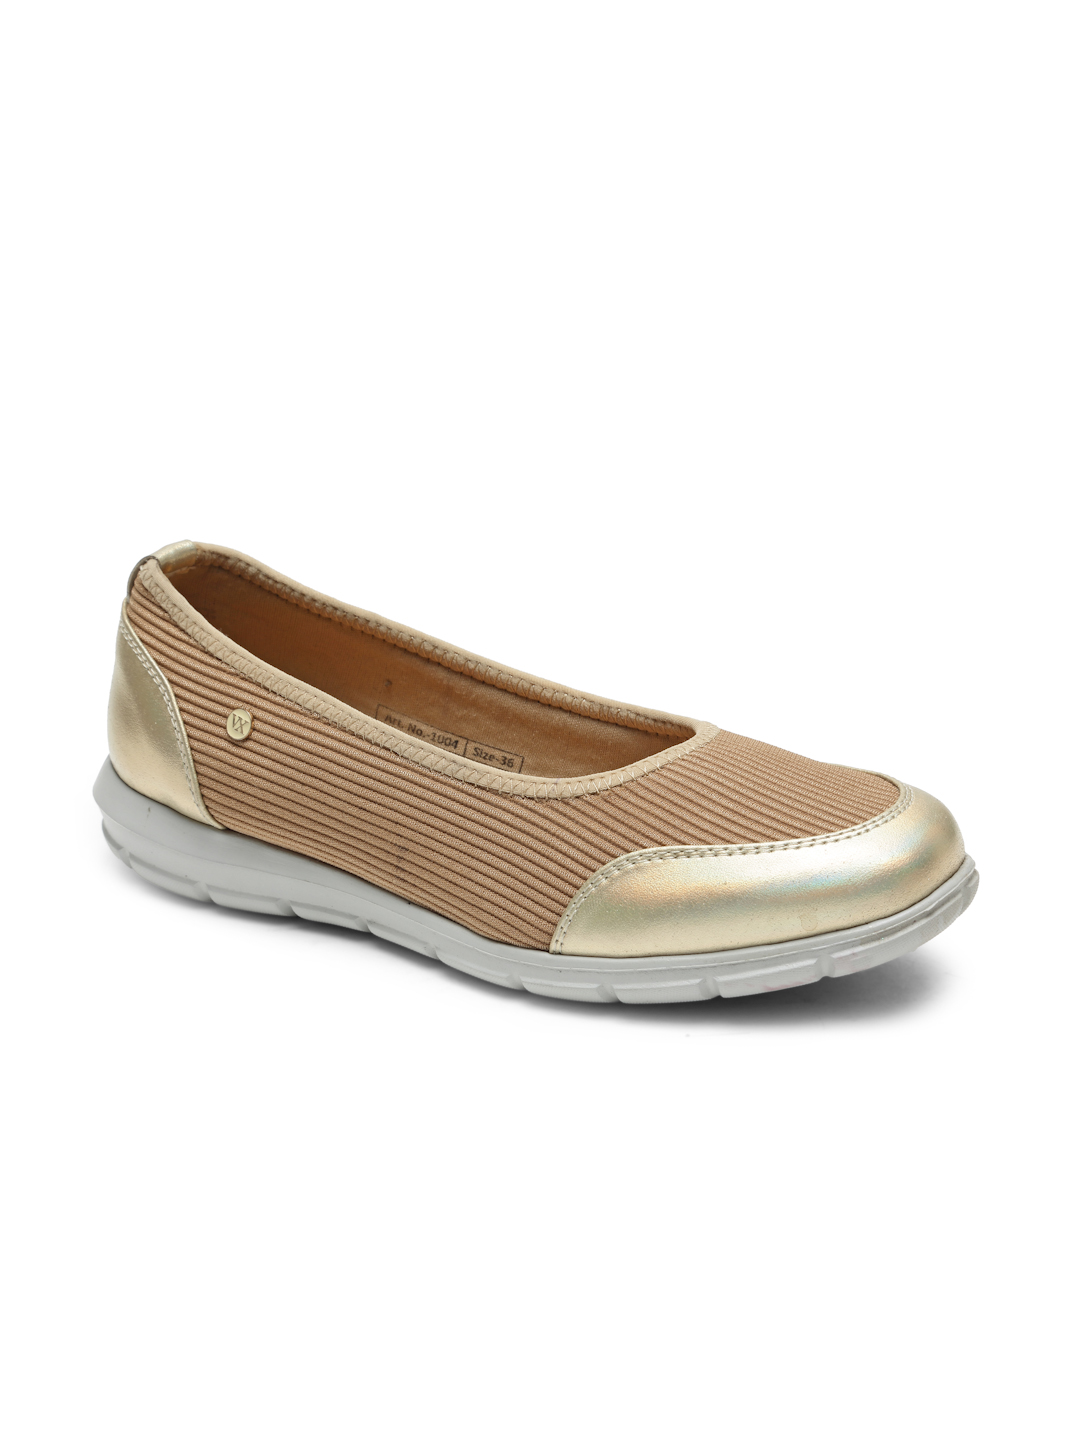 Buy Von Wellx Germany Comfort Women's Beige Casual Shoes Alice Online in Dehradun